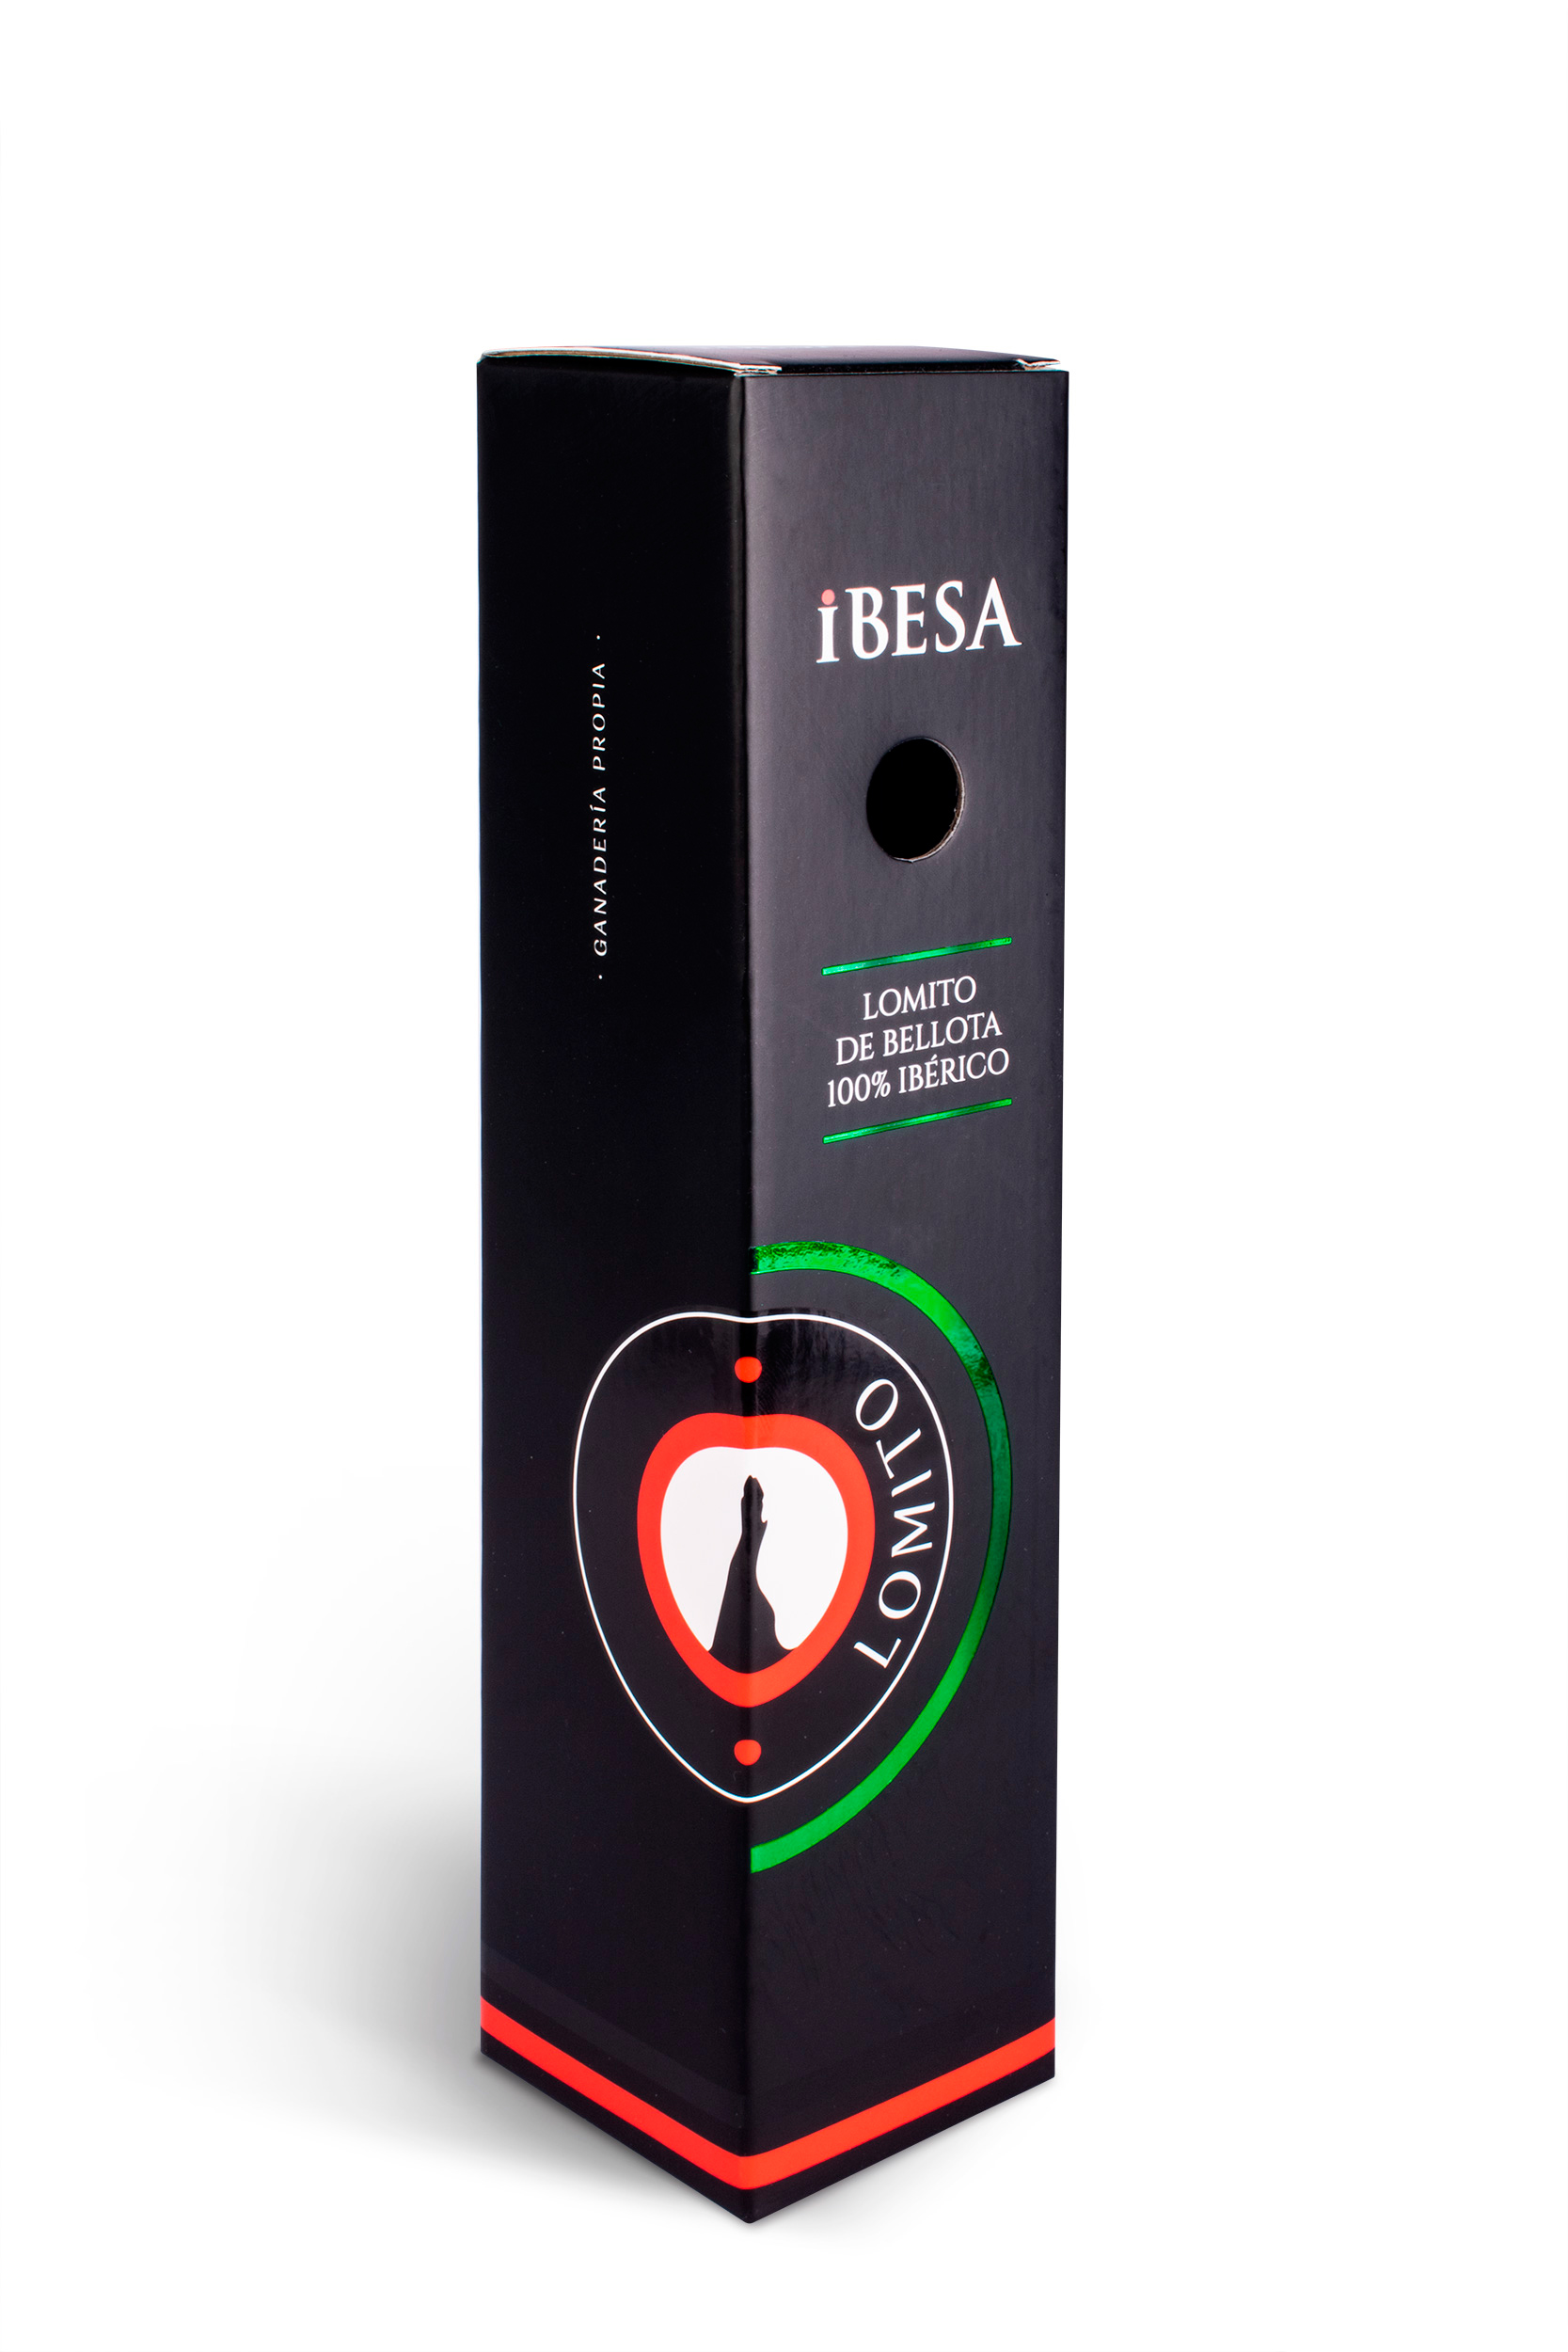 Packaging embutidos IBESA